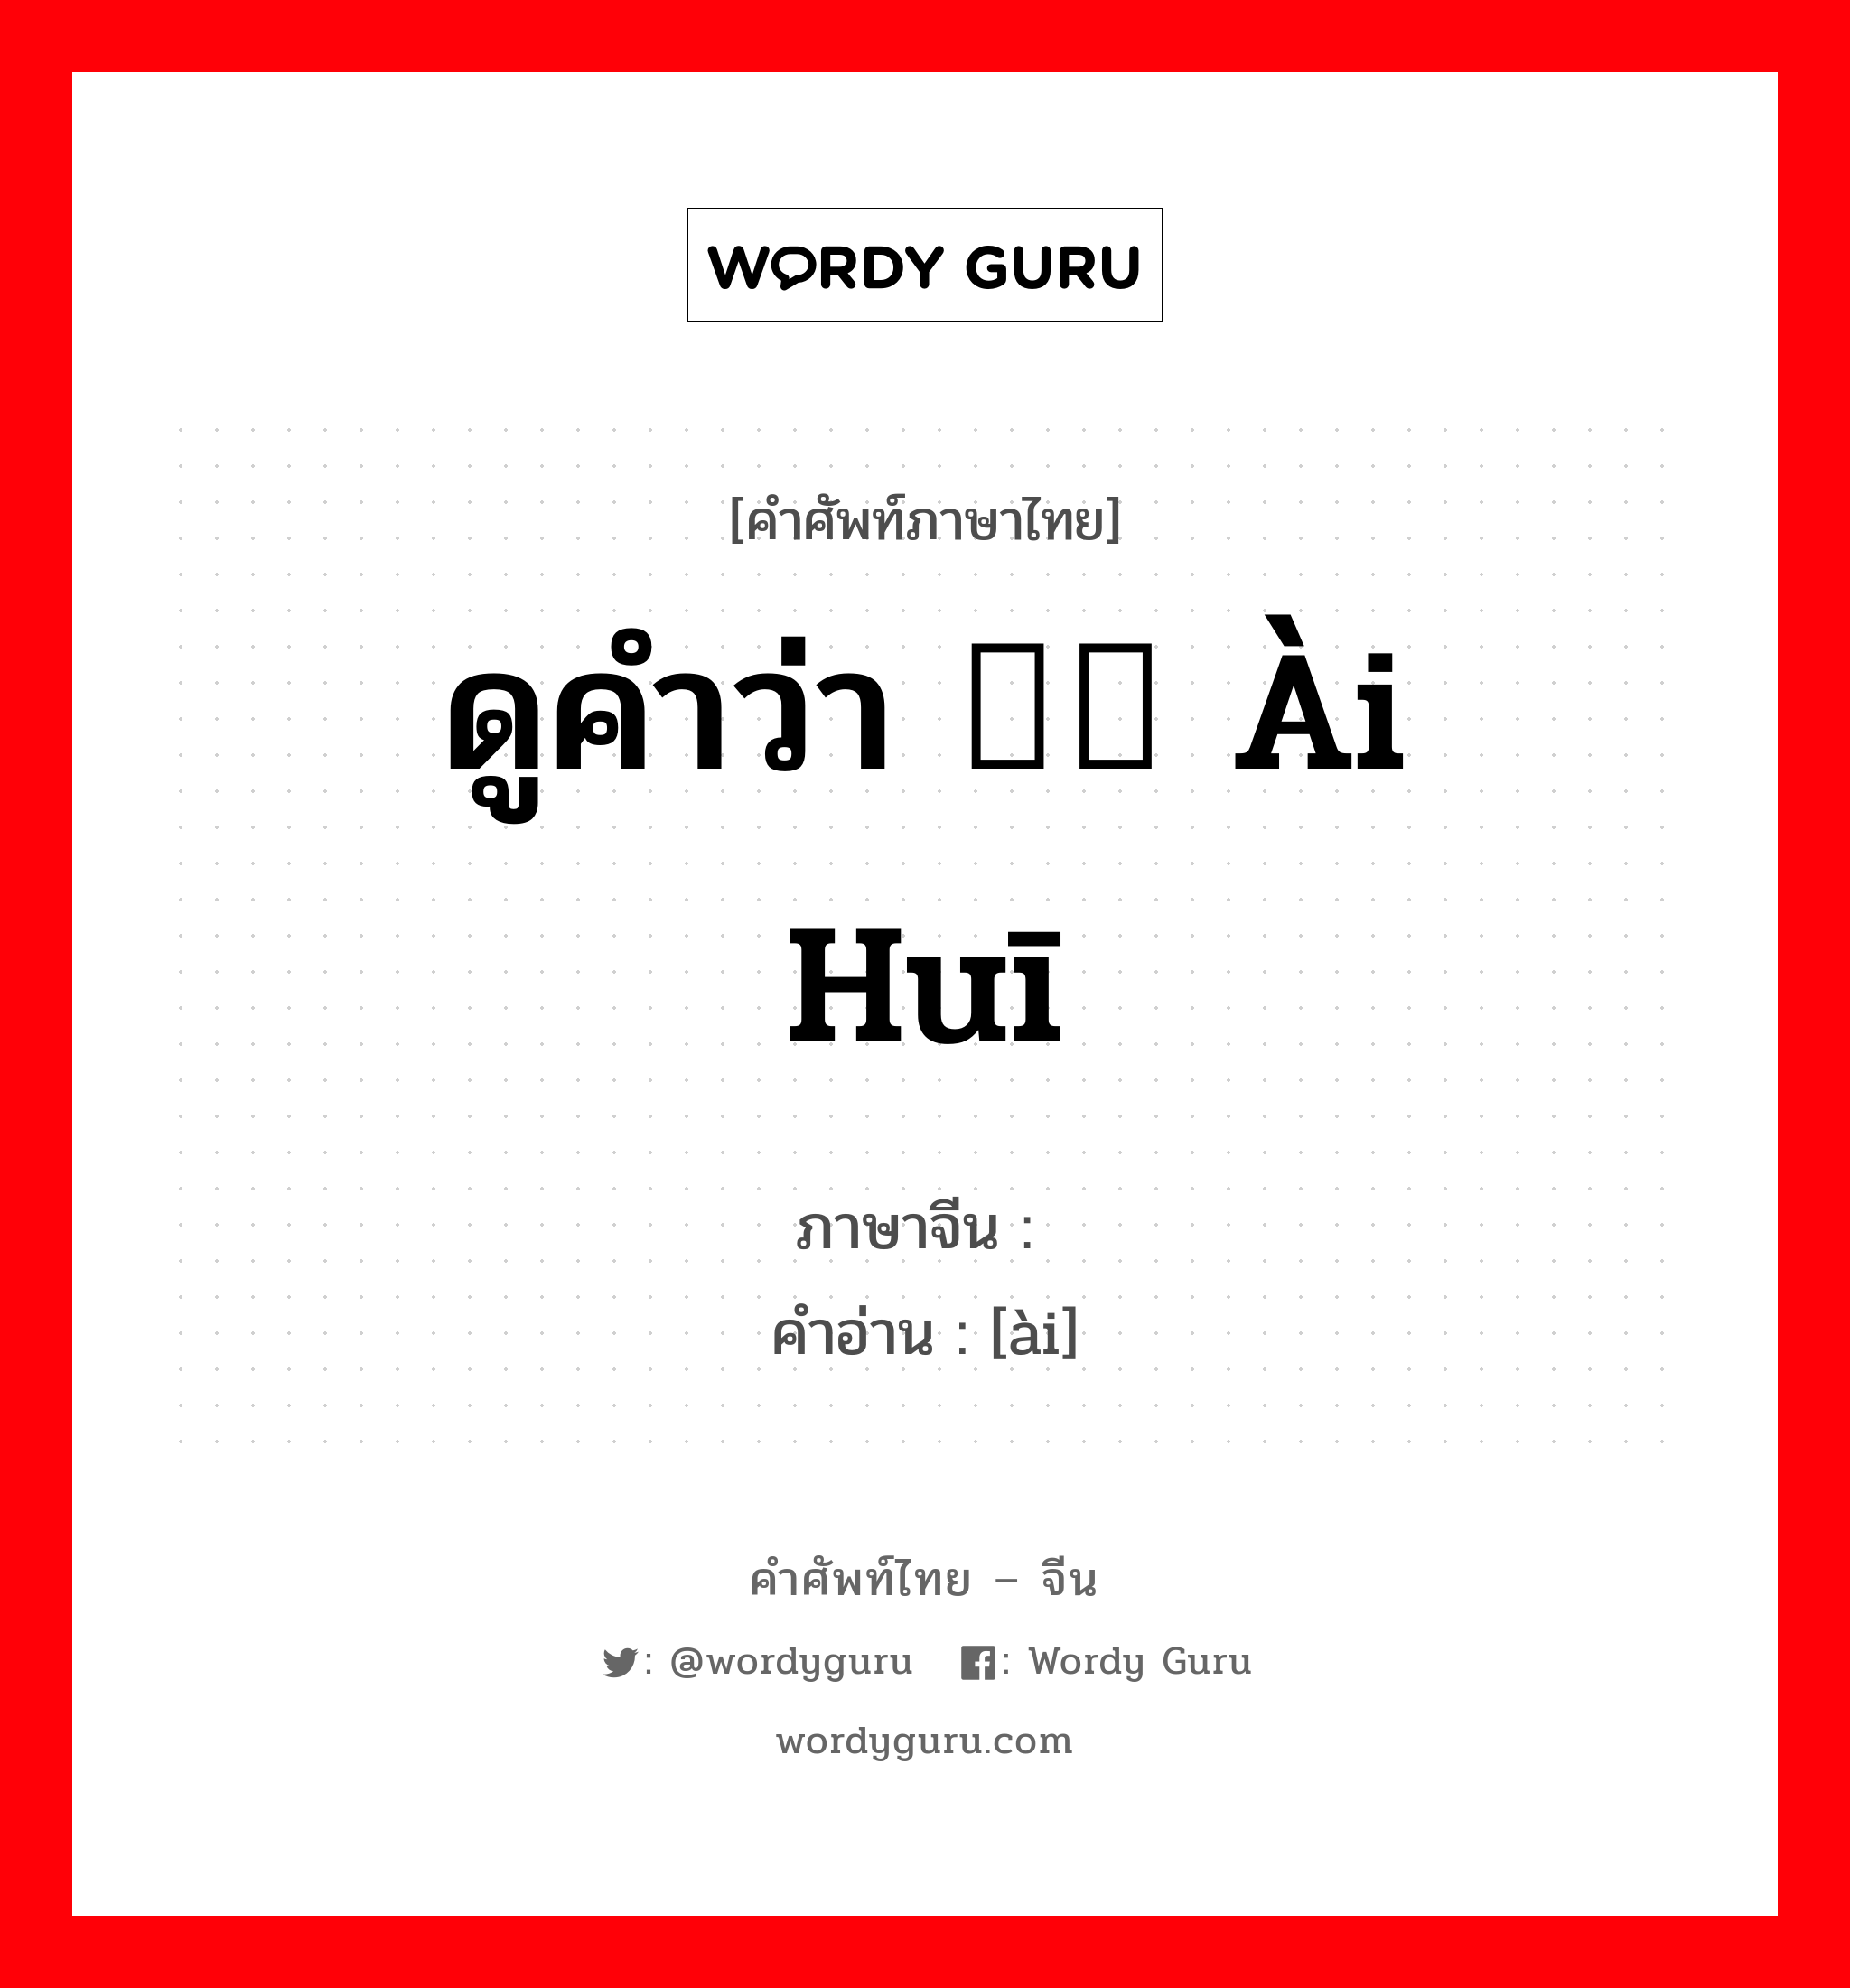 ดูคำว่า 瑷珲 ài huī ภาษาจีนคืออะไร, คำศัพท์ภาษาไทย - จีน ดูคำว่า 瑷珲 ài huī ภาษาจีน 瑷 คำอ่าน [ài]